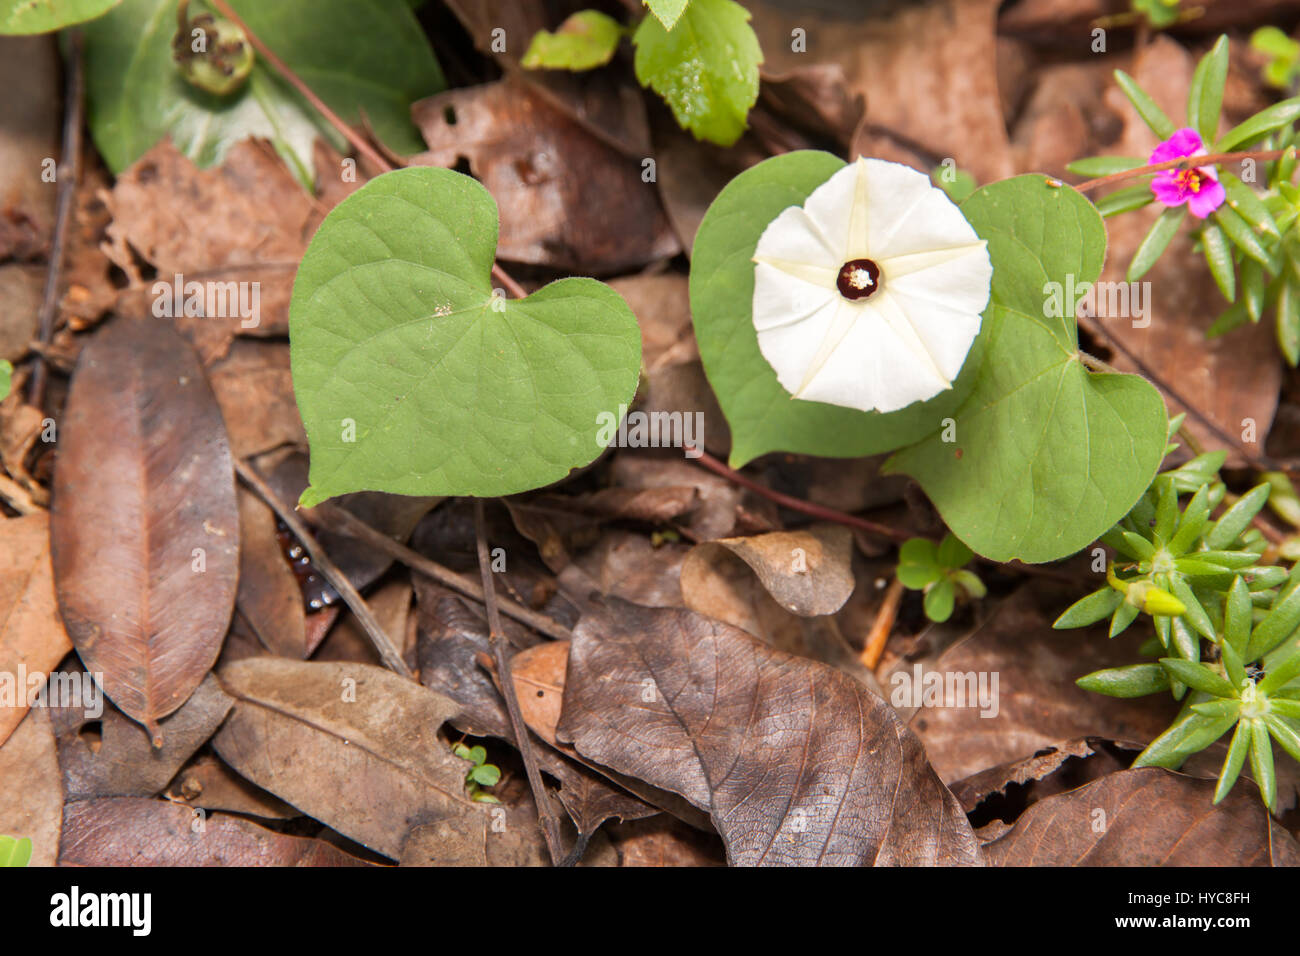 Fiori di colore bianco e verde a forma di cuore di foglie in natura. E foglie secche sul terreno. Foto Stock